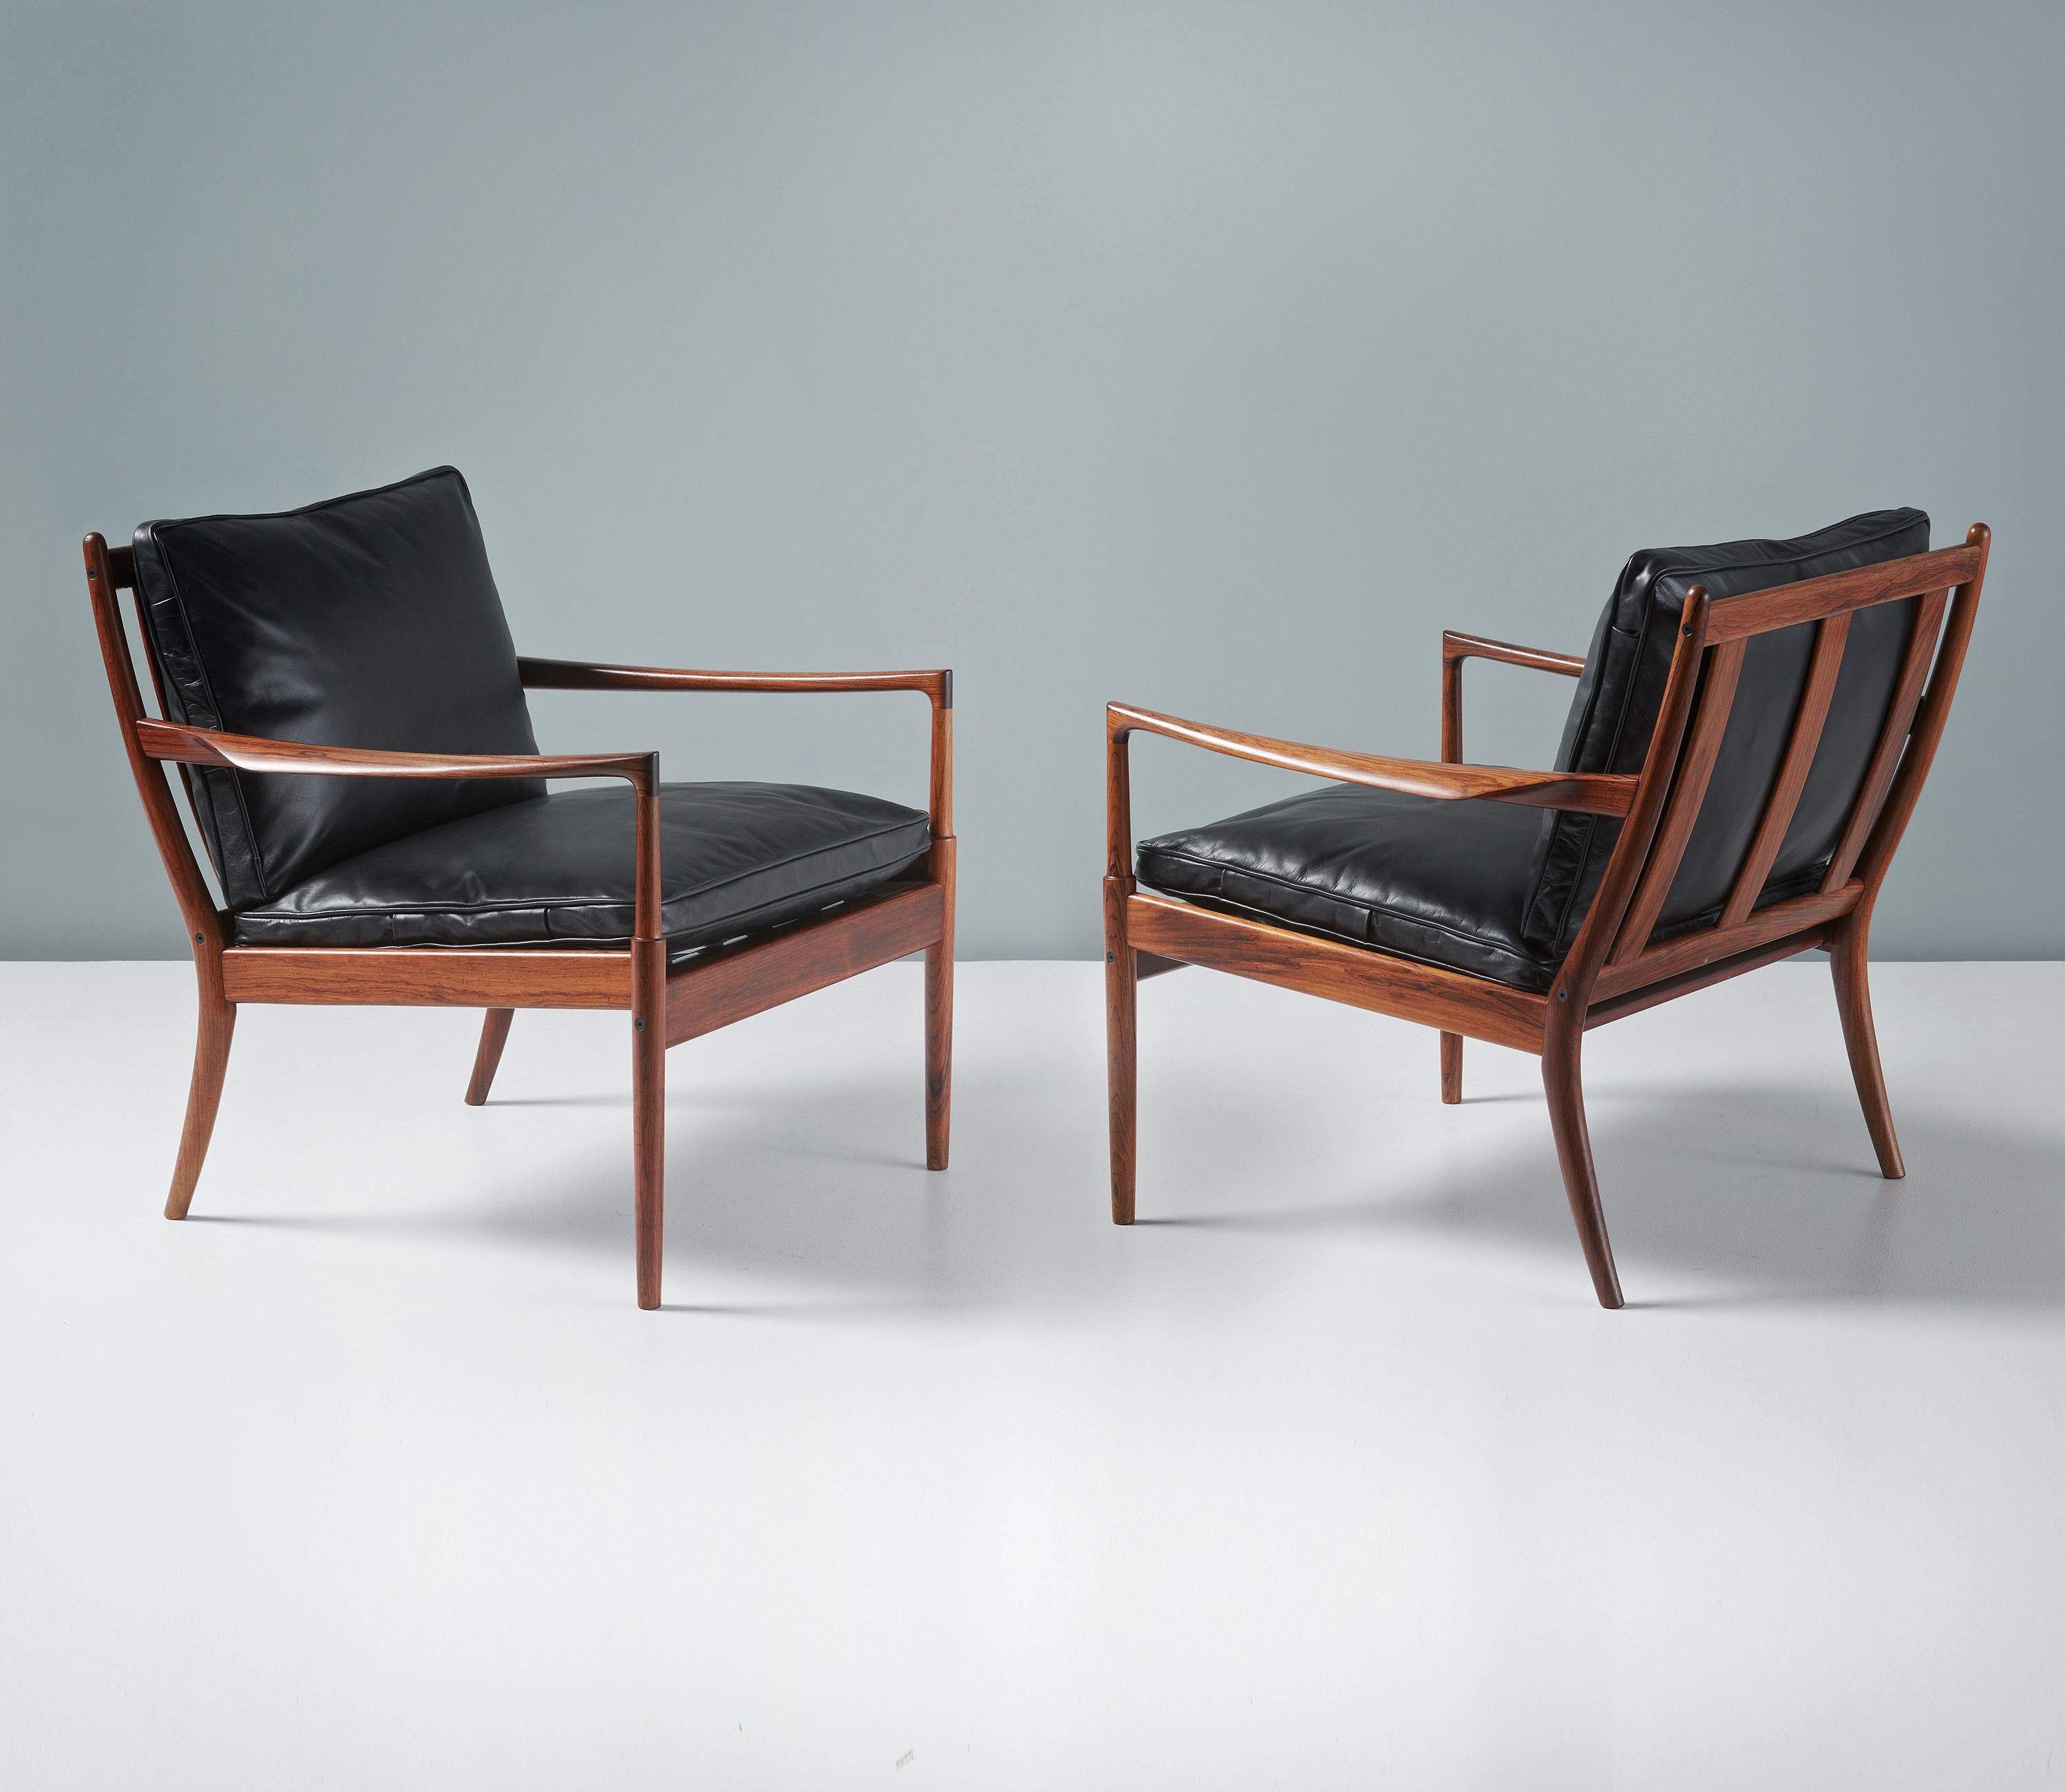 Ib Kofod-Larsen - Paar Samso Lounge Chairs, um 1958.

Selten zu sehende Loungesessel, hergestellt von Olof Perssons Fatoljindustri (OPE), Jonkoping, Schweden. Diese Exemplare sind aus stark gemasertem exotischem Palisanderholz gefertigt und werden